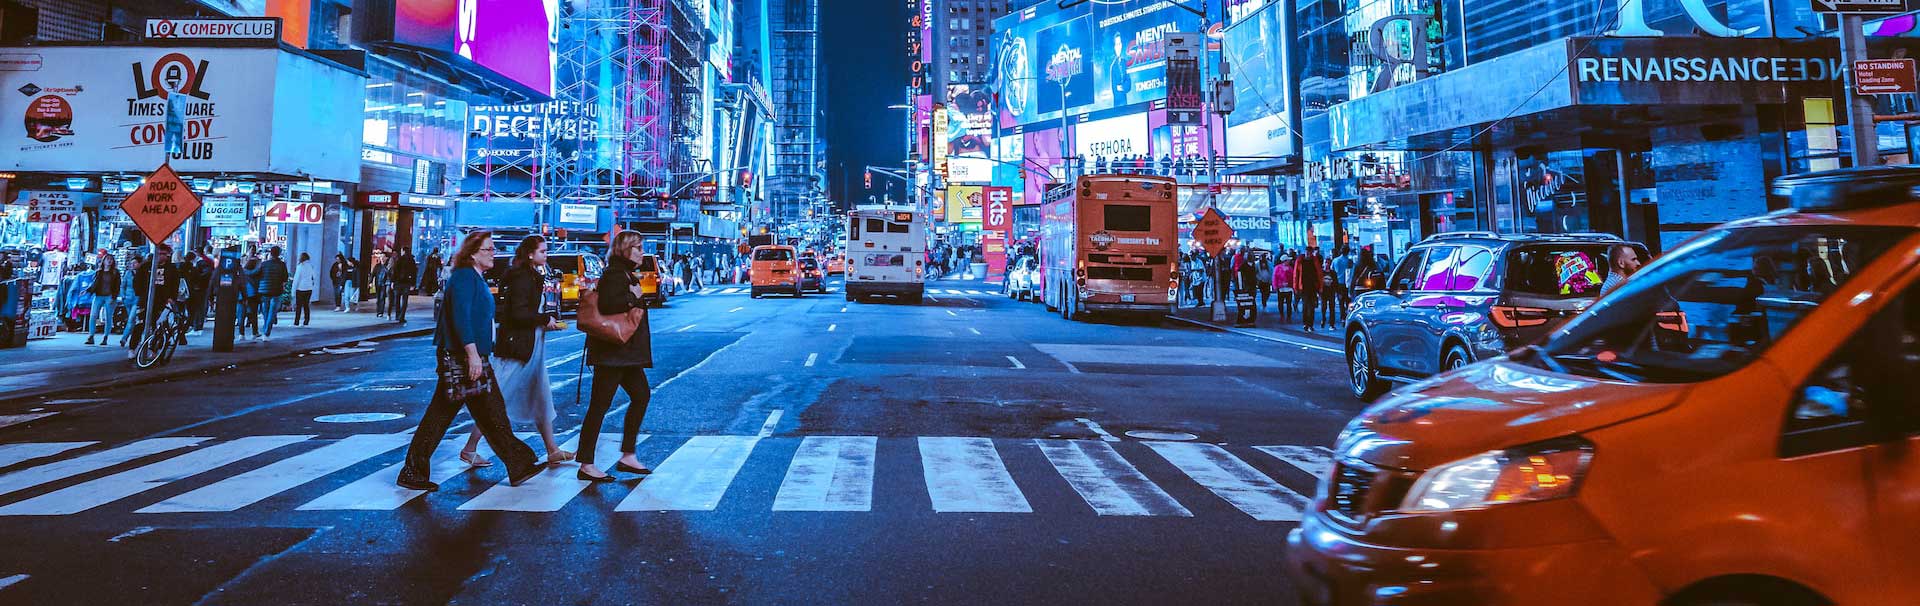 New York City Times Square : des gens sur le passage piéton